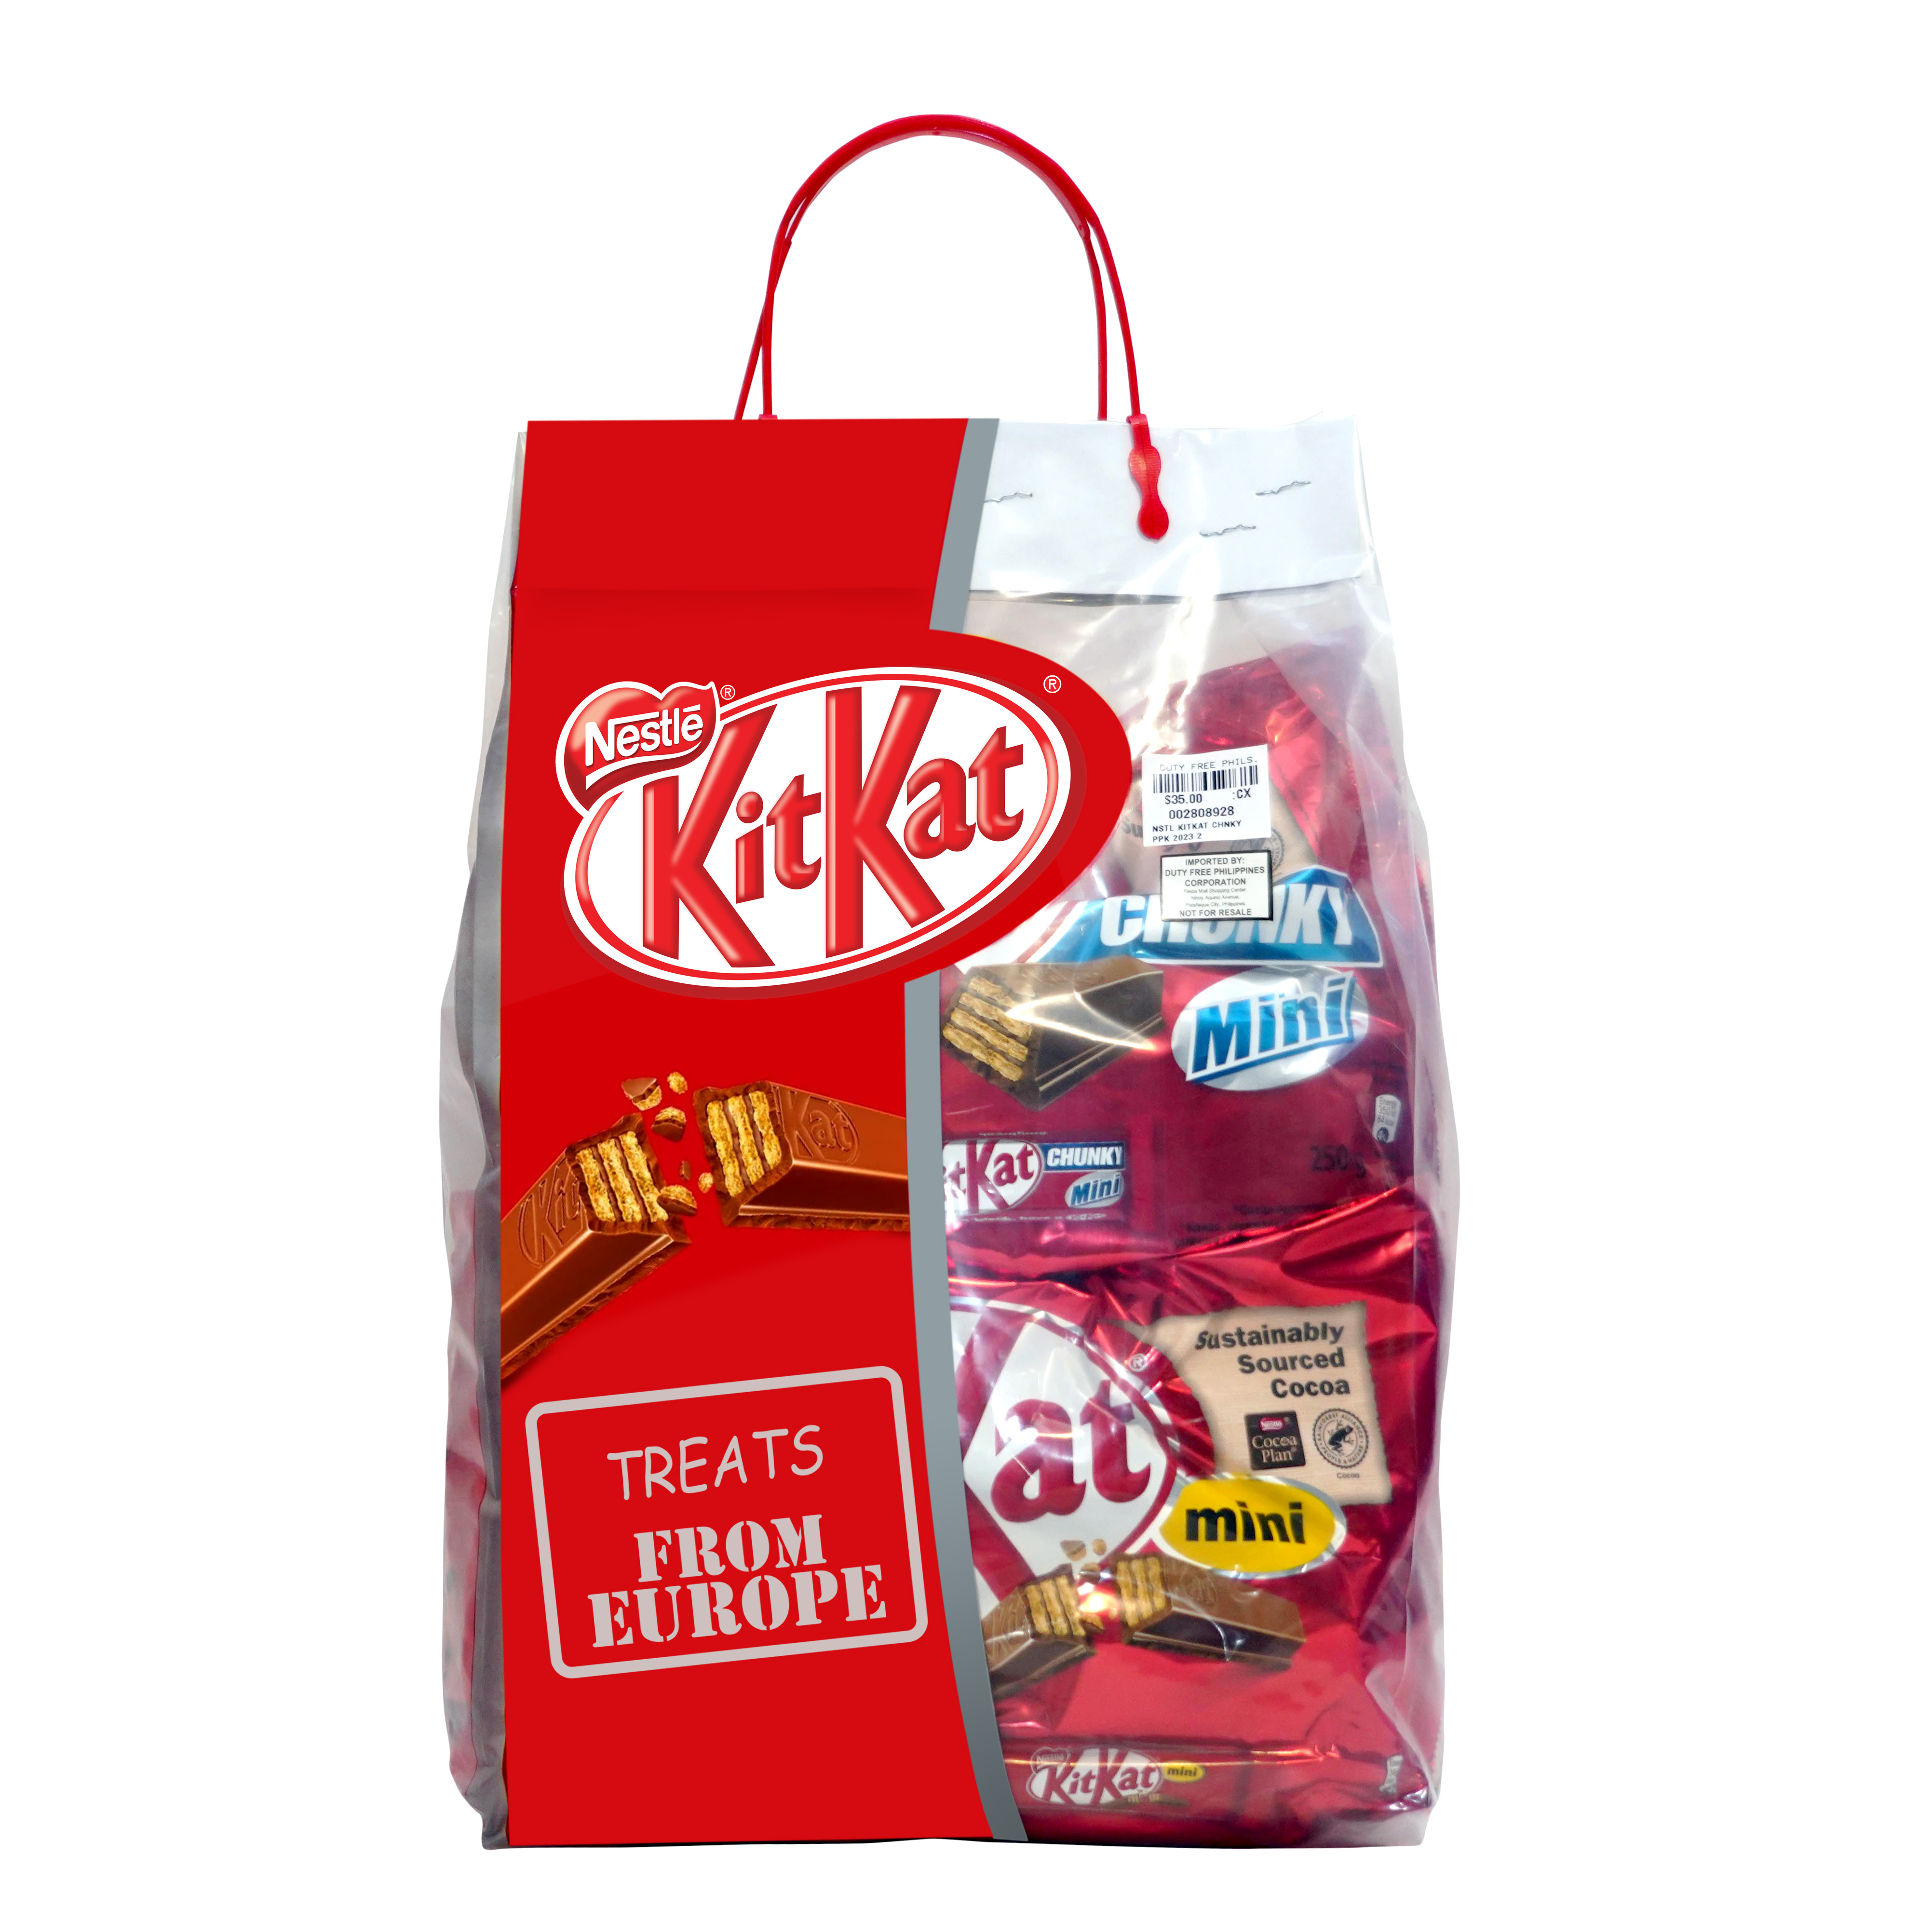 Nestlé KitKat Assorted Pasalubong Pack (13 pcs)